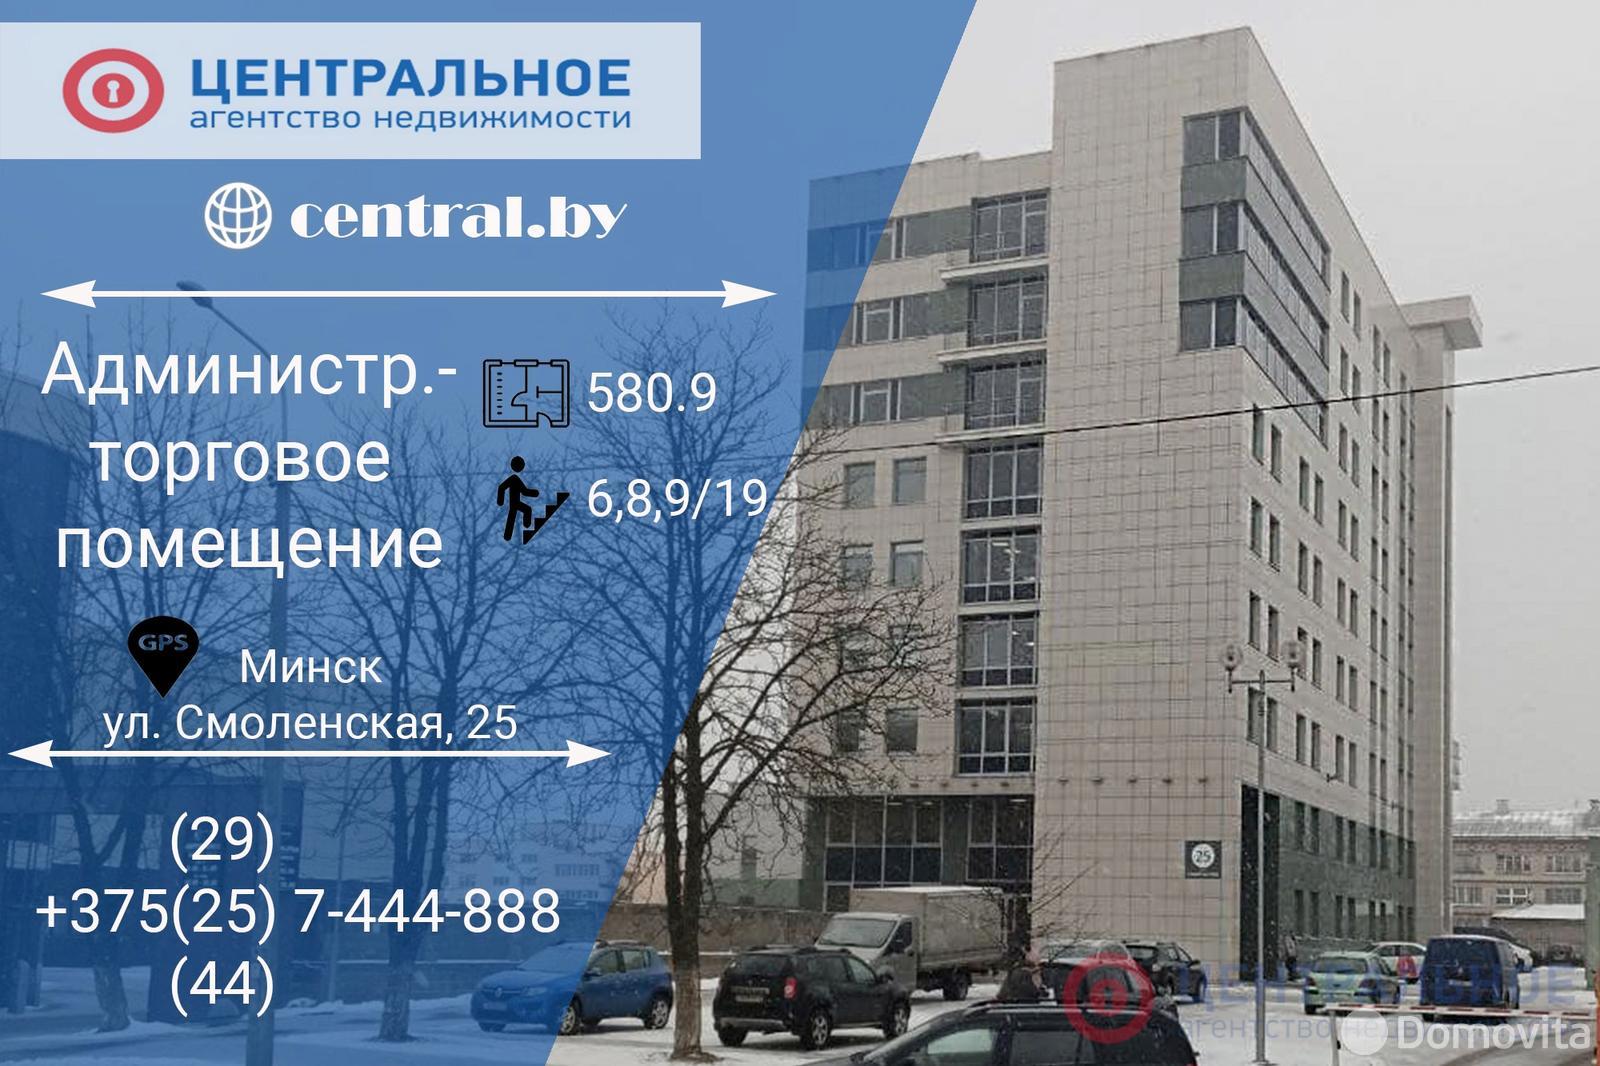 Аренда торгового помещения на ул. Смоленская, д. 25 в Минске, 6264EUR - фото 1